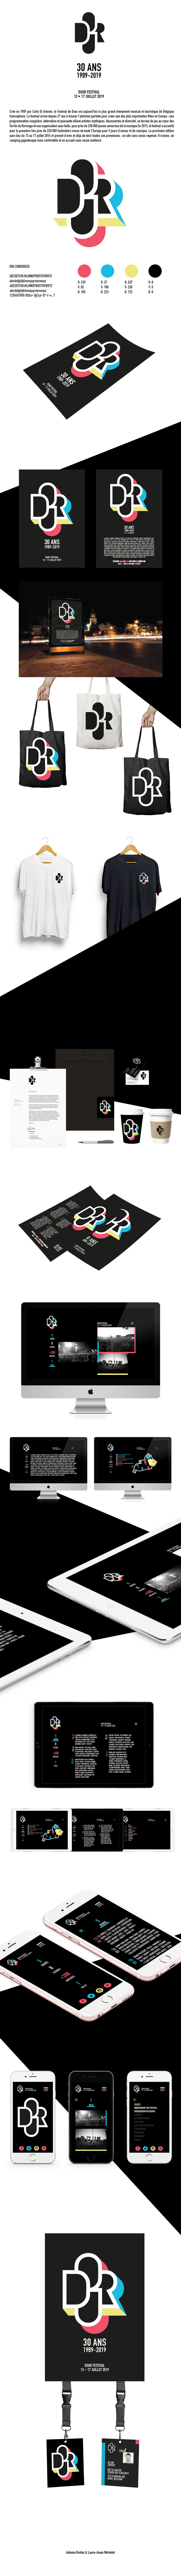 DOUR Dour Festival festival 30 ans programmation Program Web design web Musique Mockup logo identitée visuel visual identity